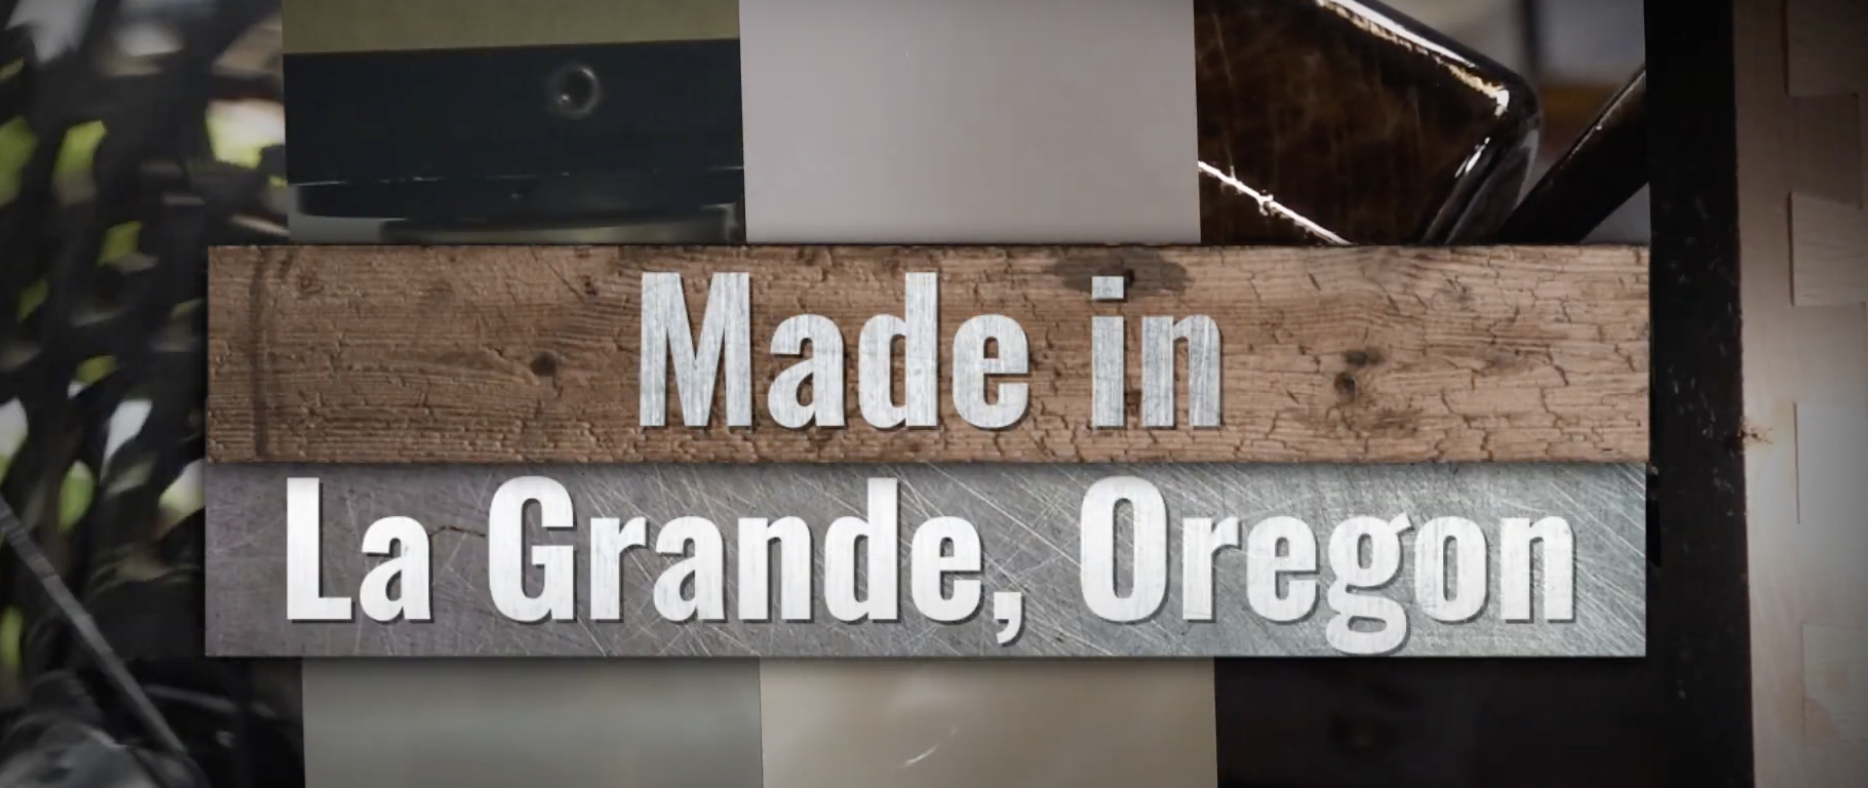 Made in La Grande, Oregon: La Grande Economic Development Image